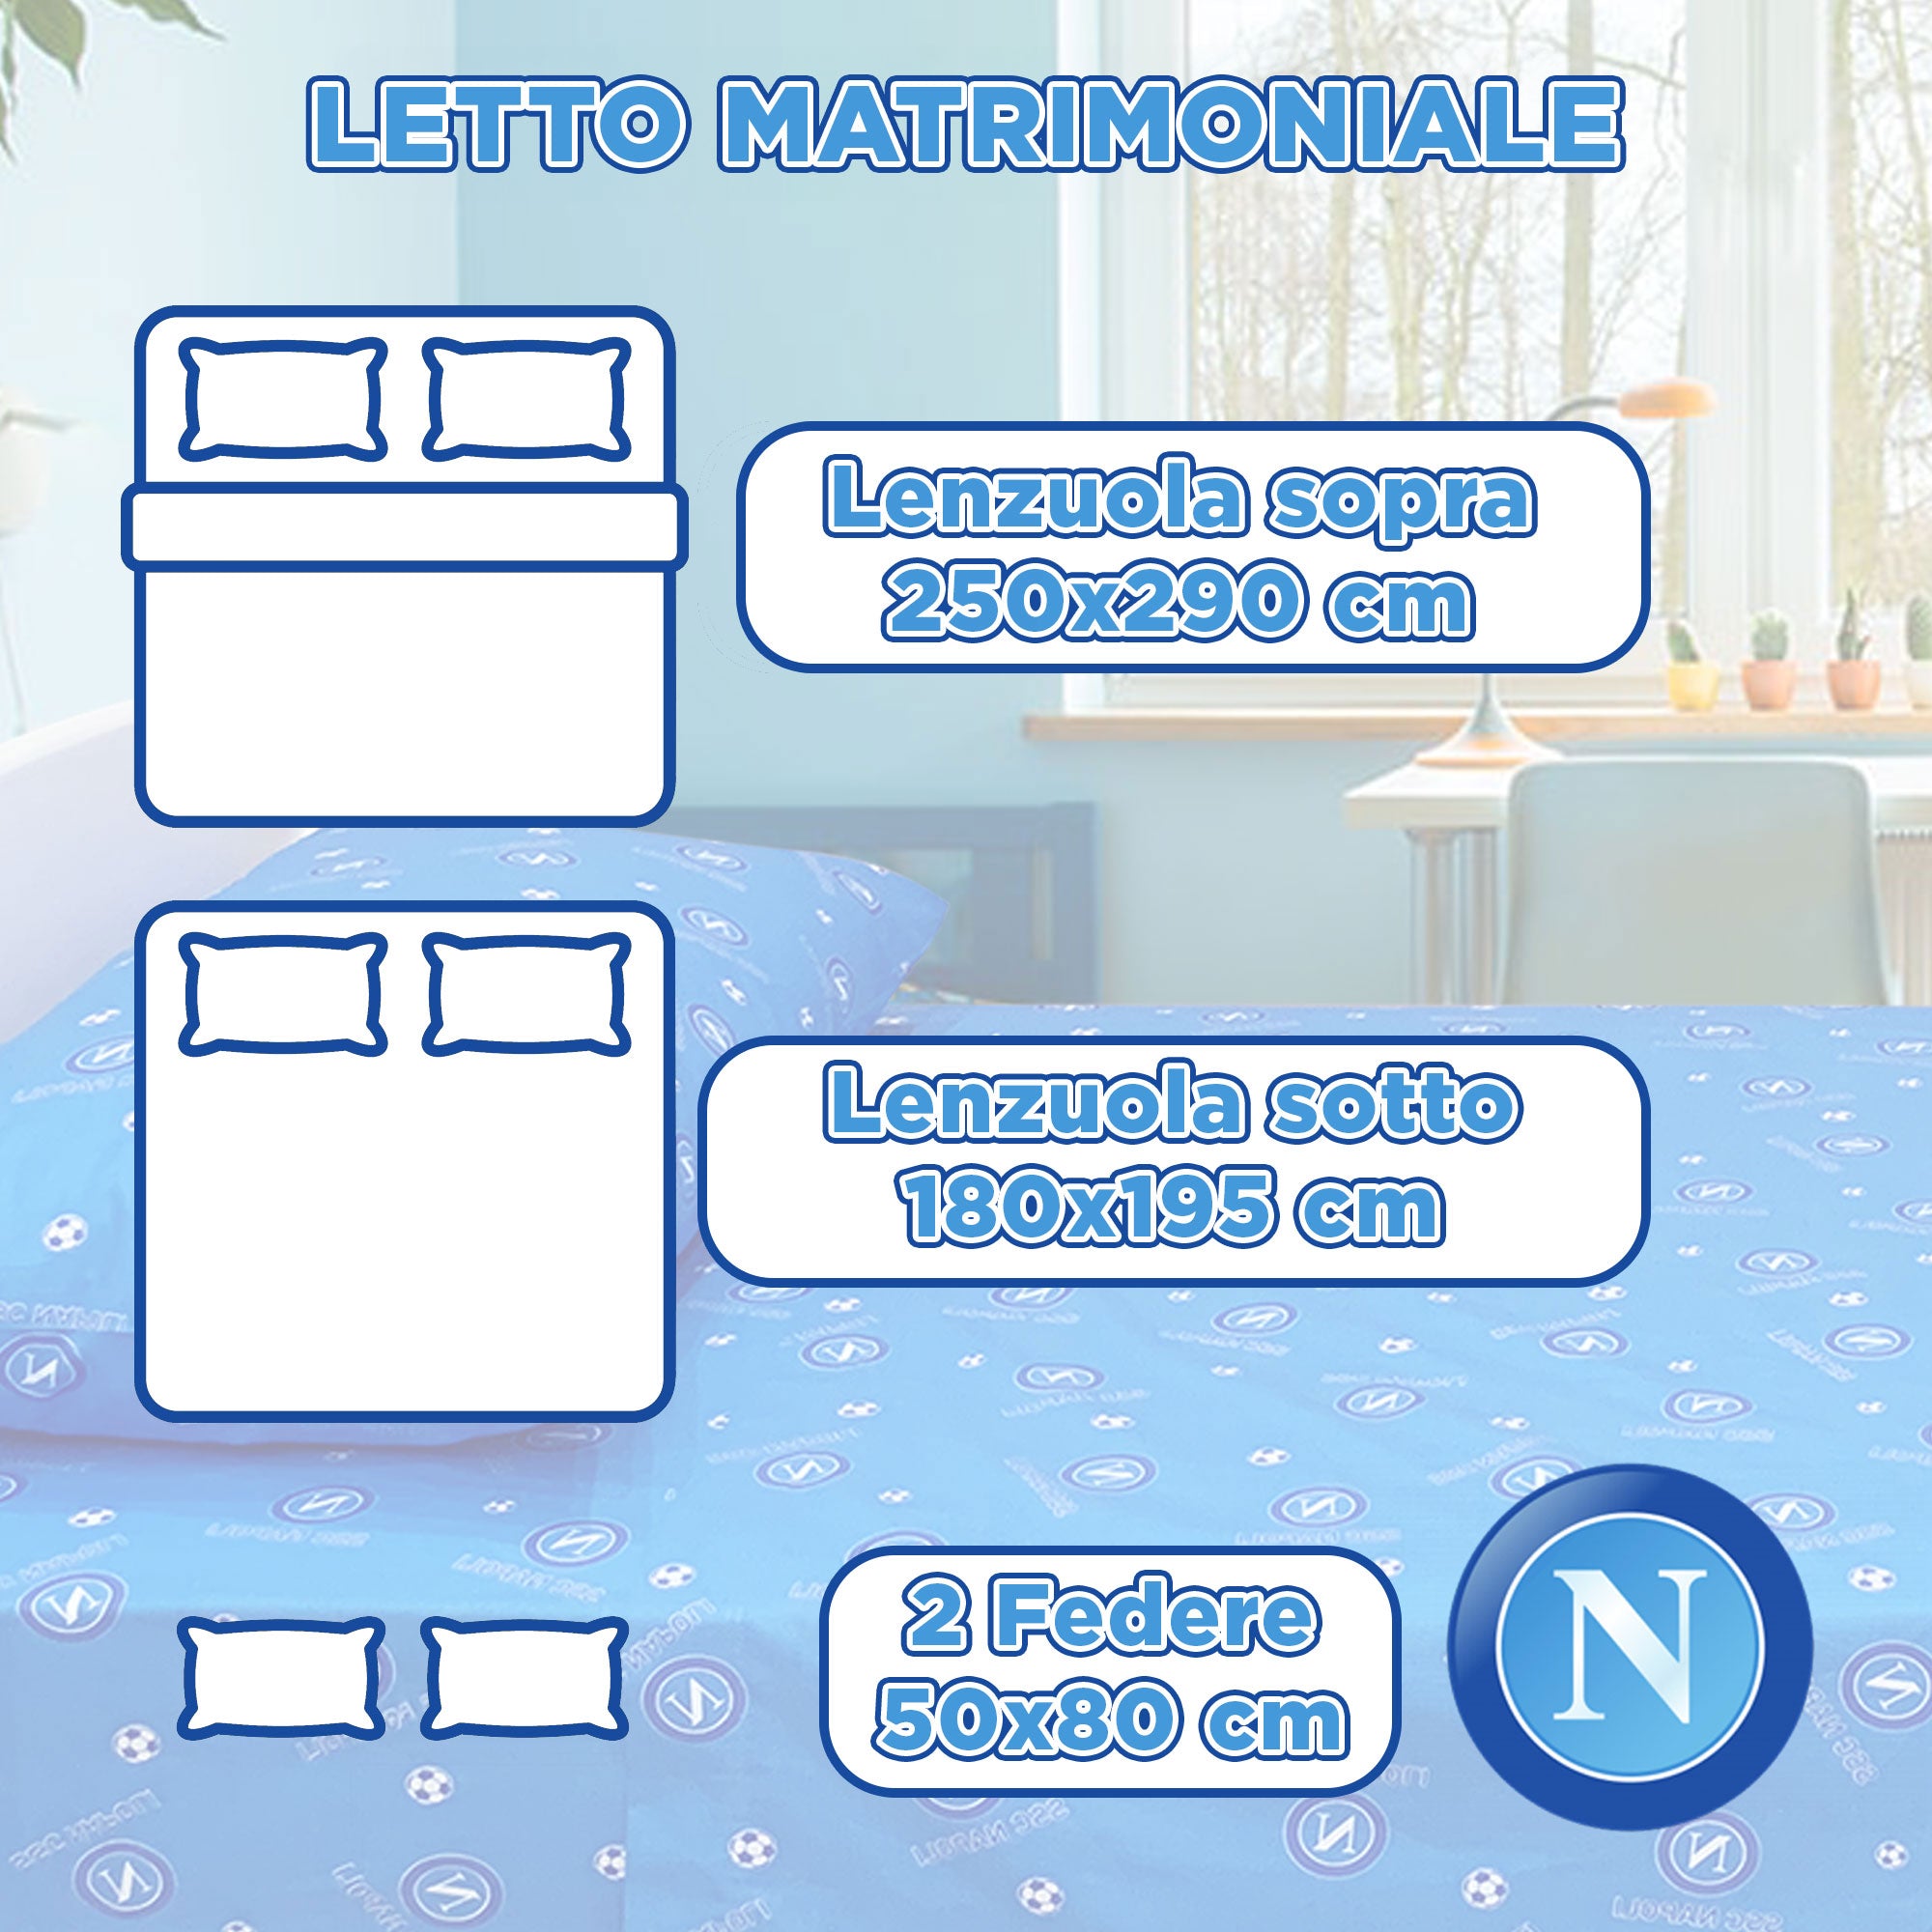 Completo Lenzuola matrimoniale SSC Napoli Ufficiale in Cotone 2 Posti 6213